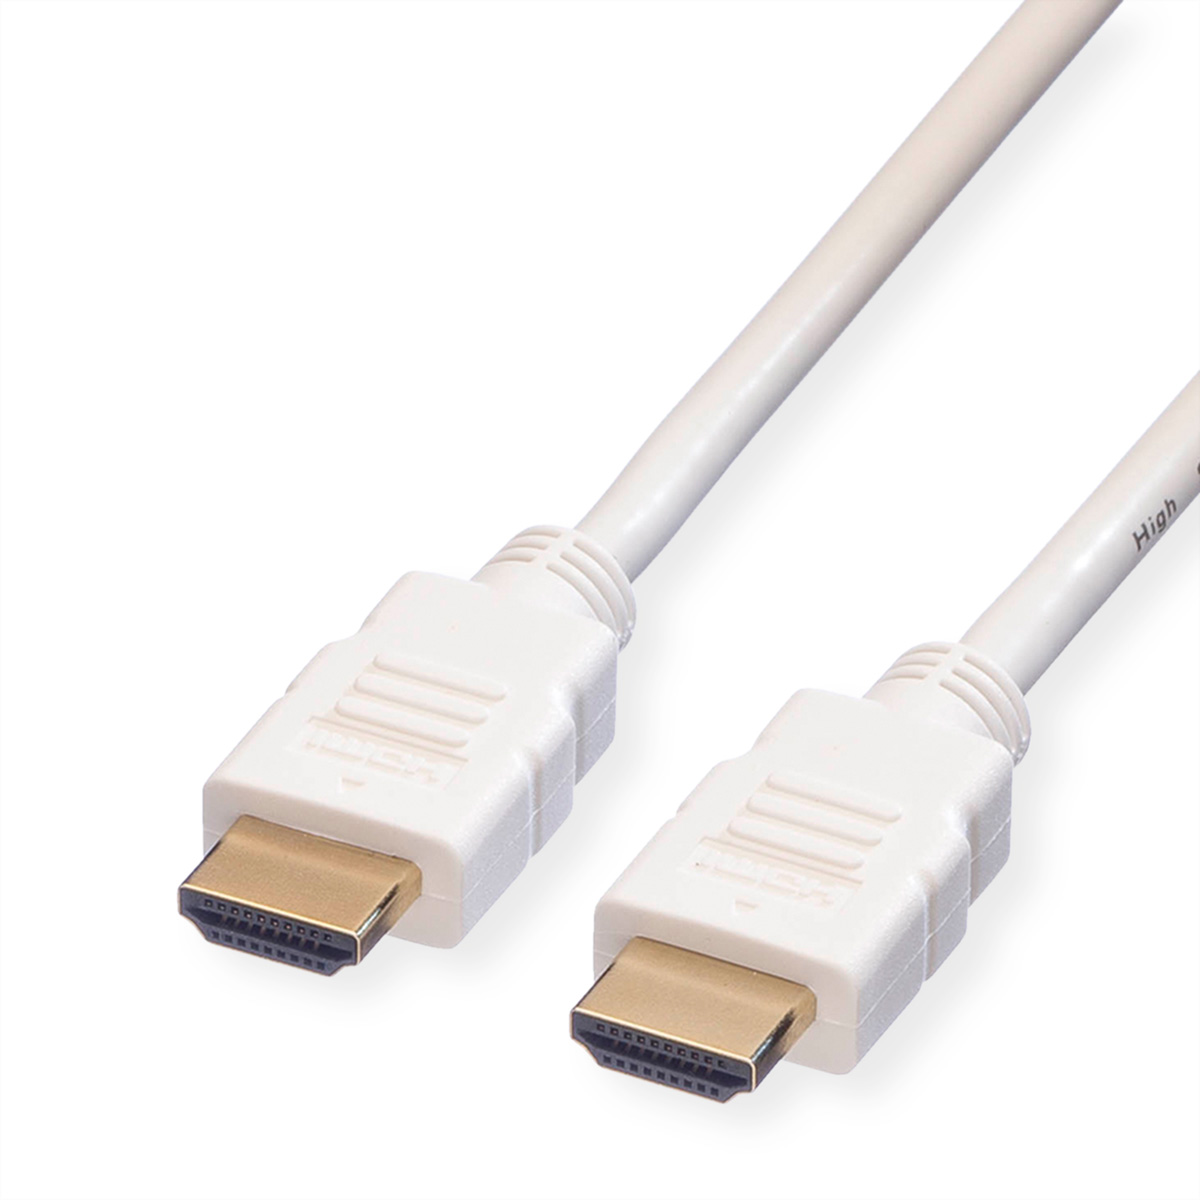 ROLINE HDMI High Speed Kabel mit Ethernet, weiß, 1,5 m